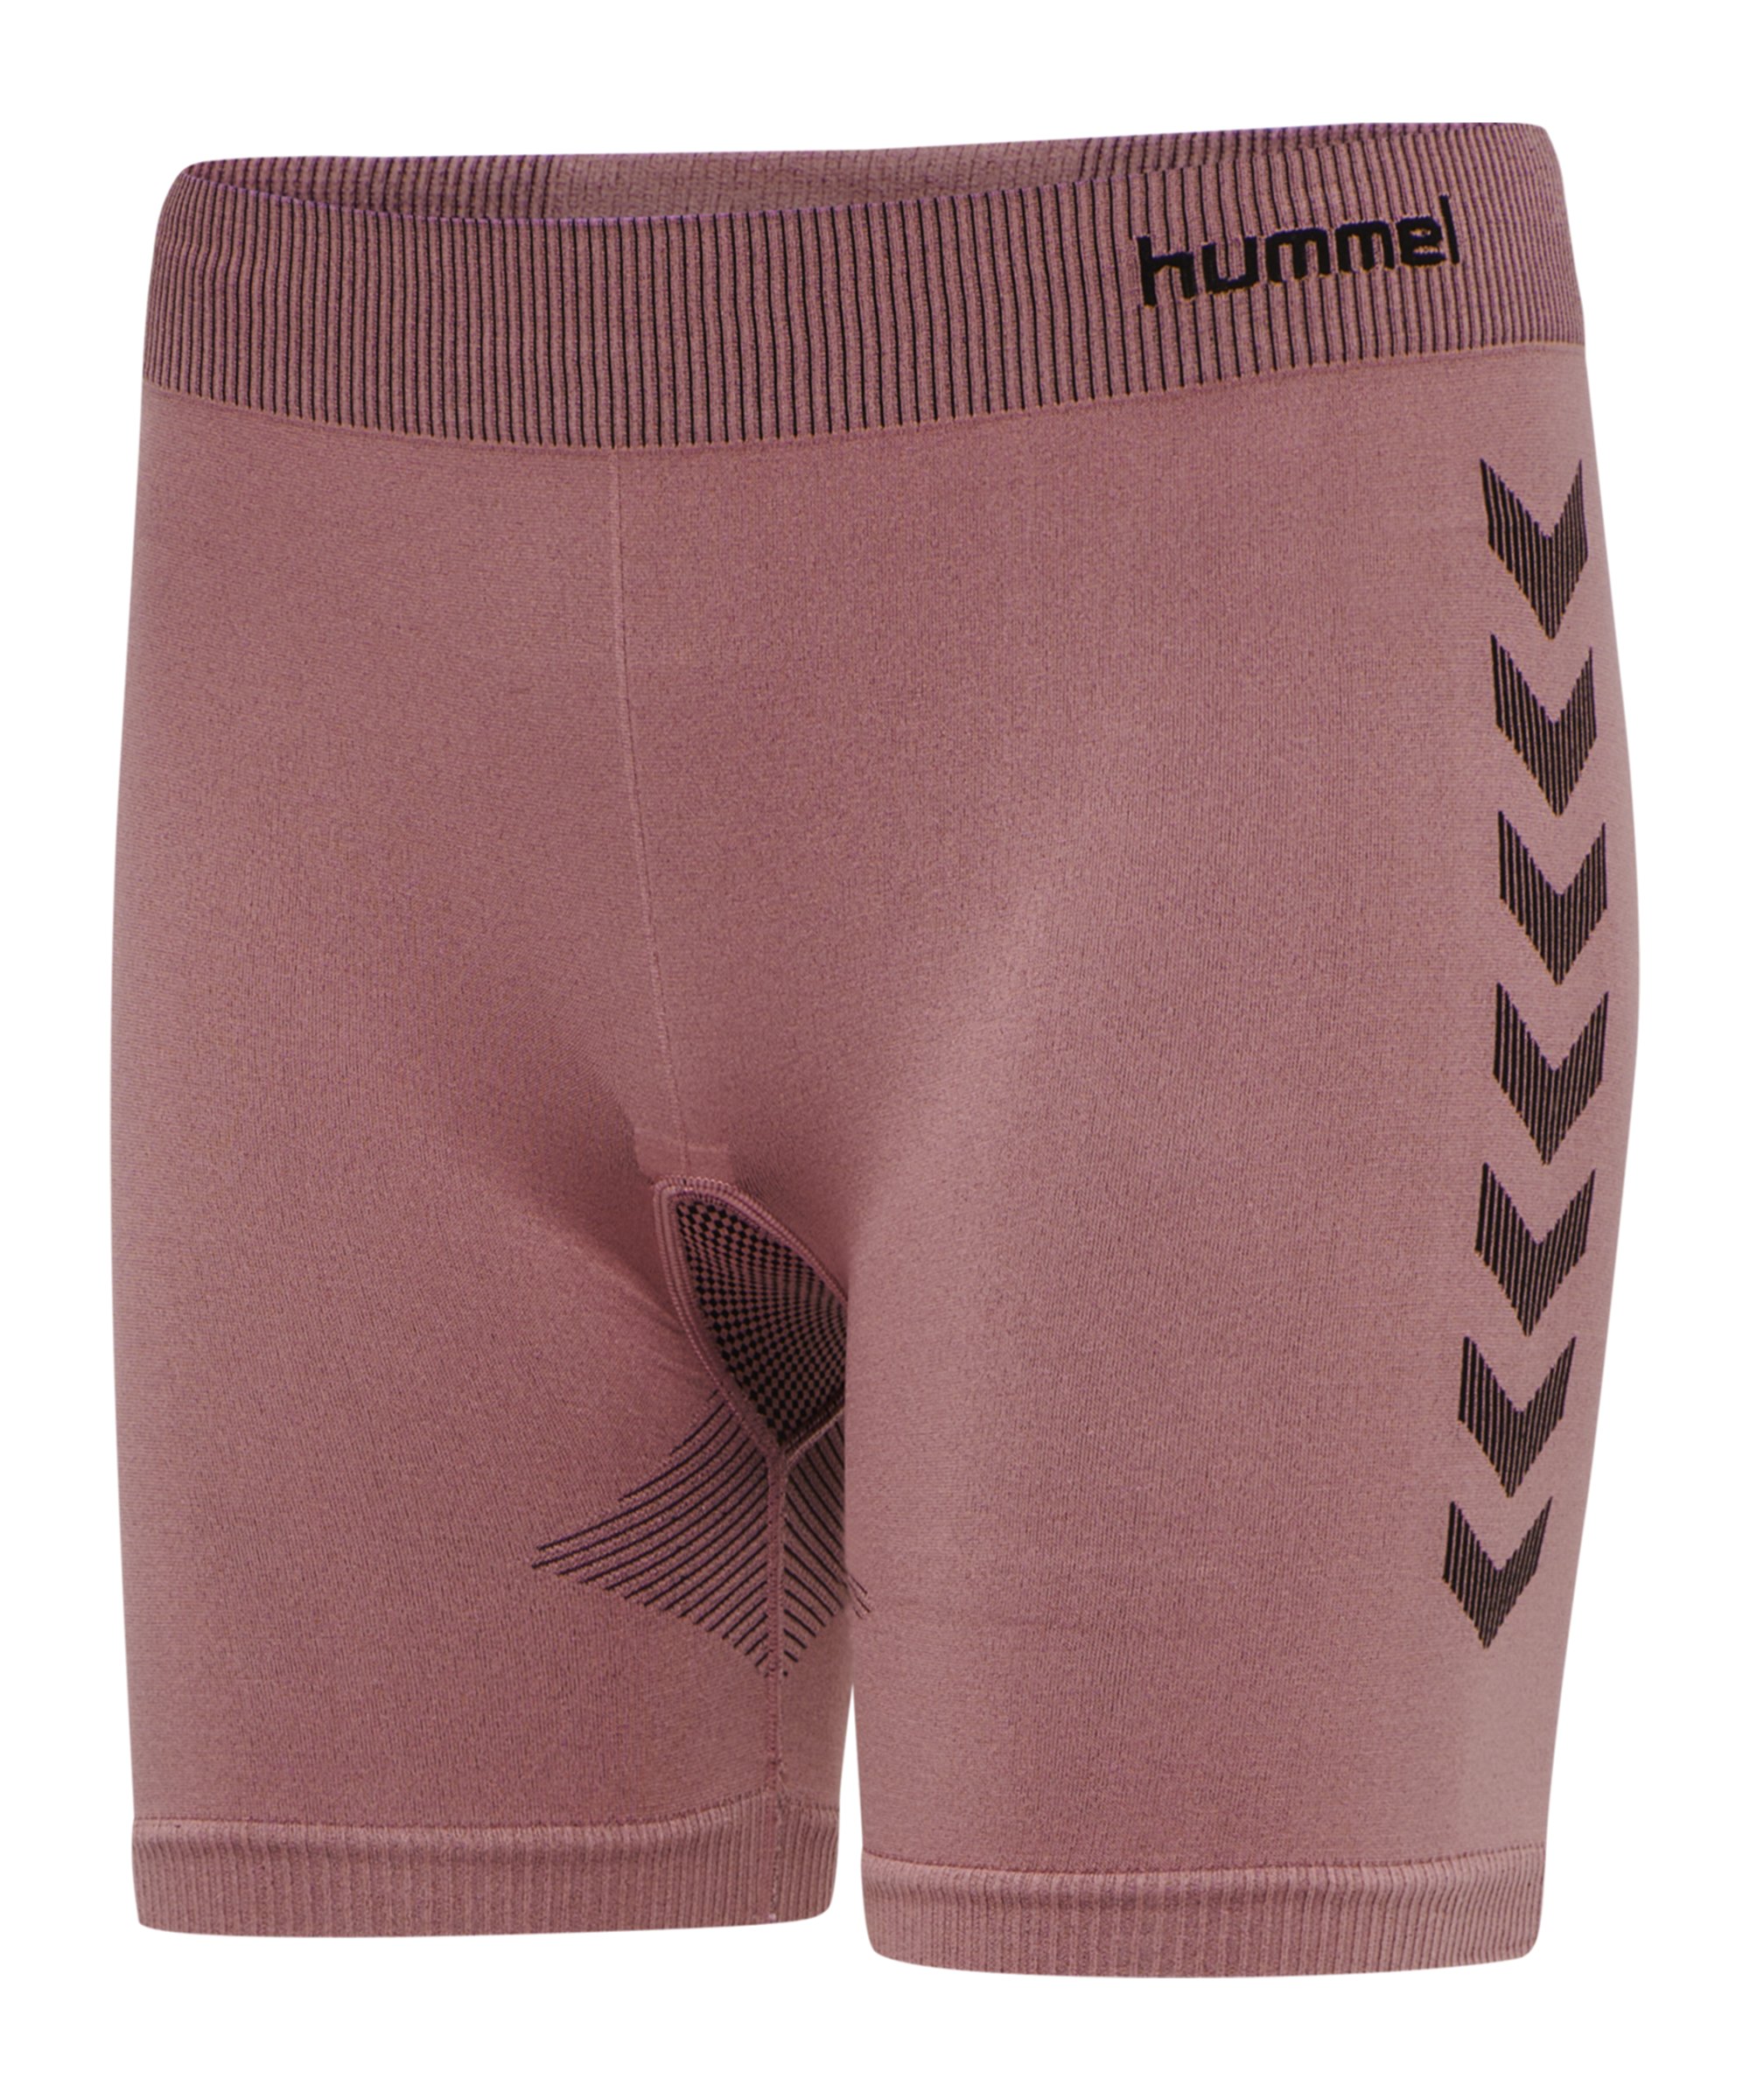 Hummel hmlFIRST Seamless Short Damen Rosa F4337 - rosa